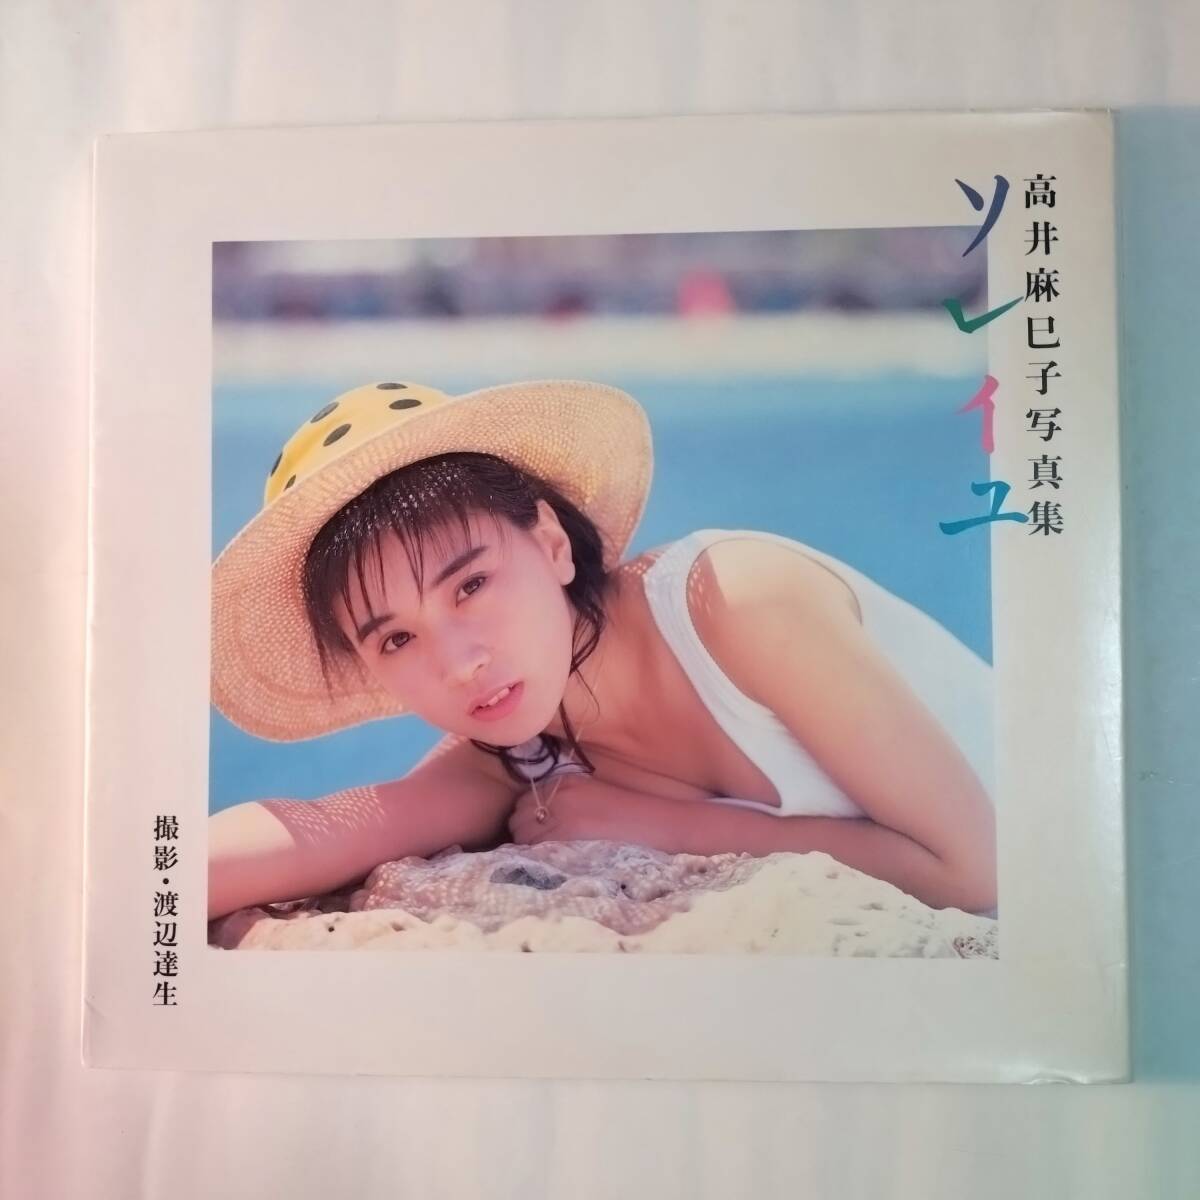 「ソレイユ」1987年 高井麻巳子の画像1